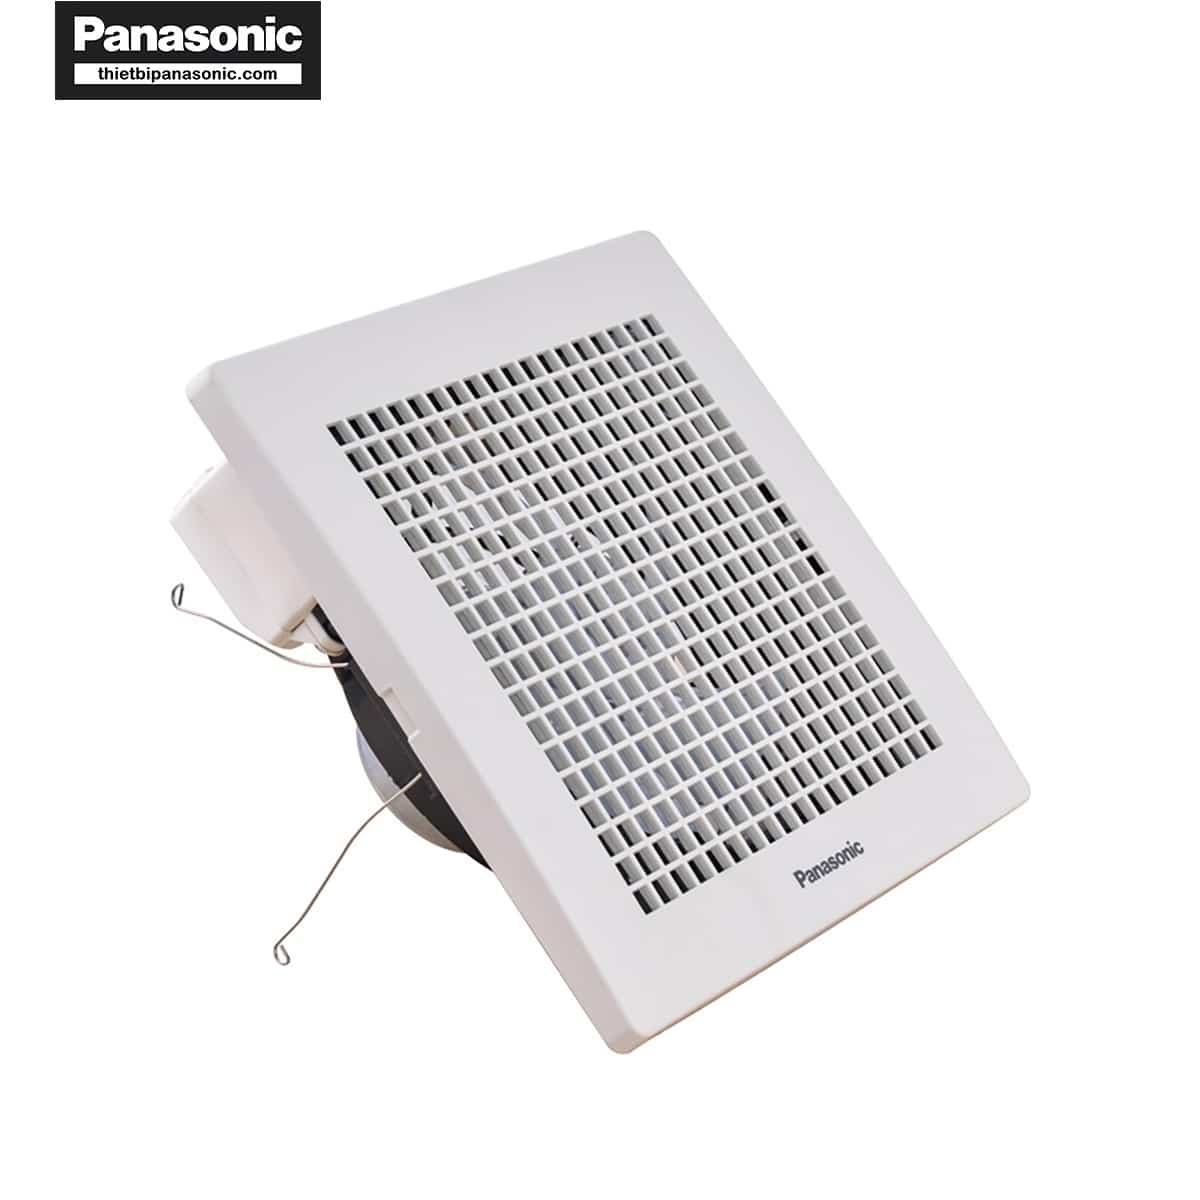 Quạt hút âm trần Panasonic FV-20CUT1 23W có thiết kế vuông vức, cứng cáp